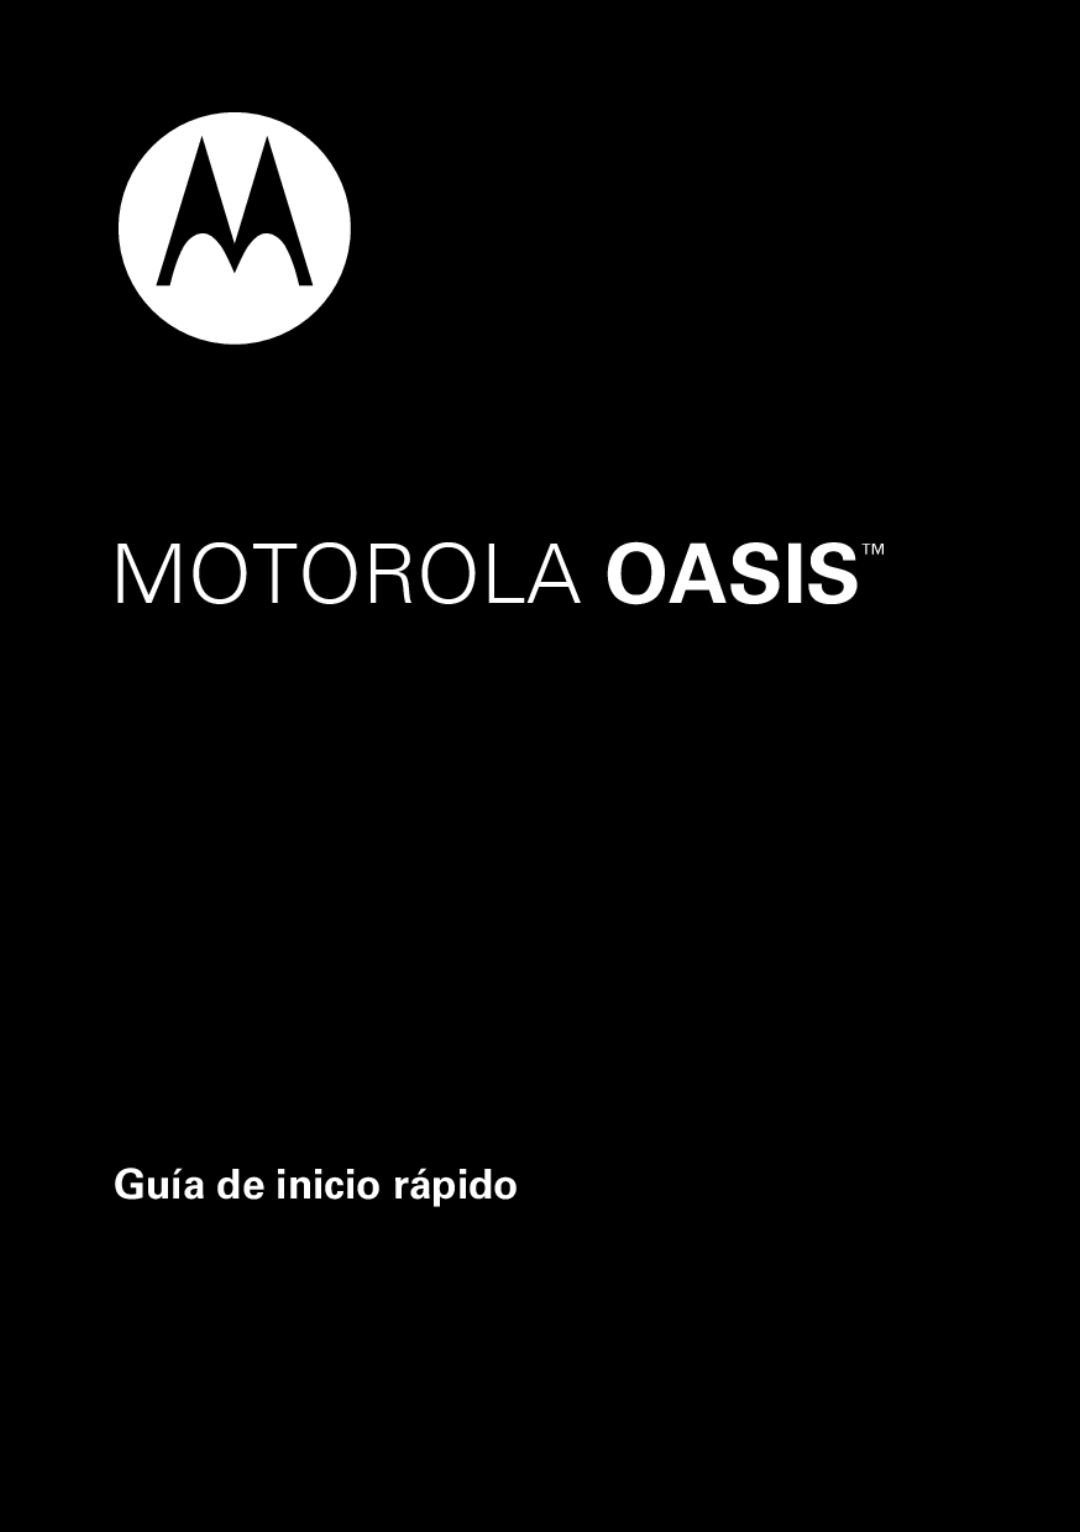 Motorola 89421n quick start Guía de inicio rápido, Motorola Oasis 